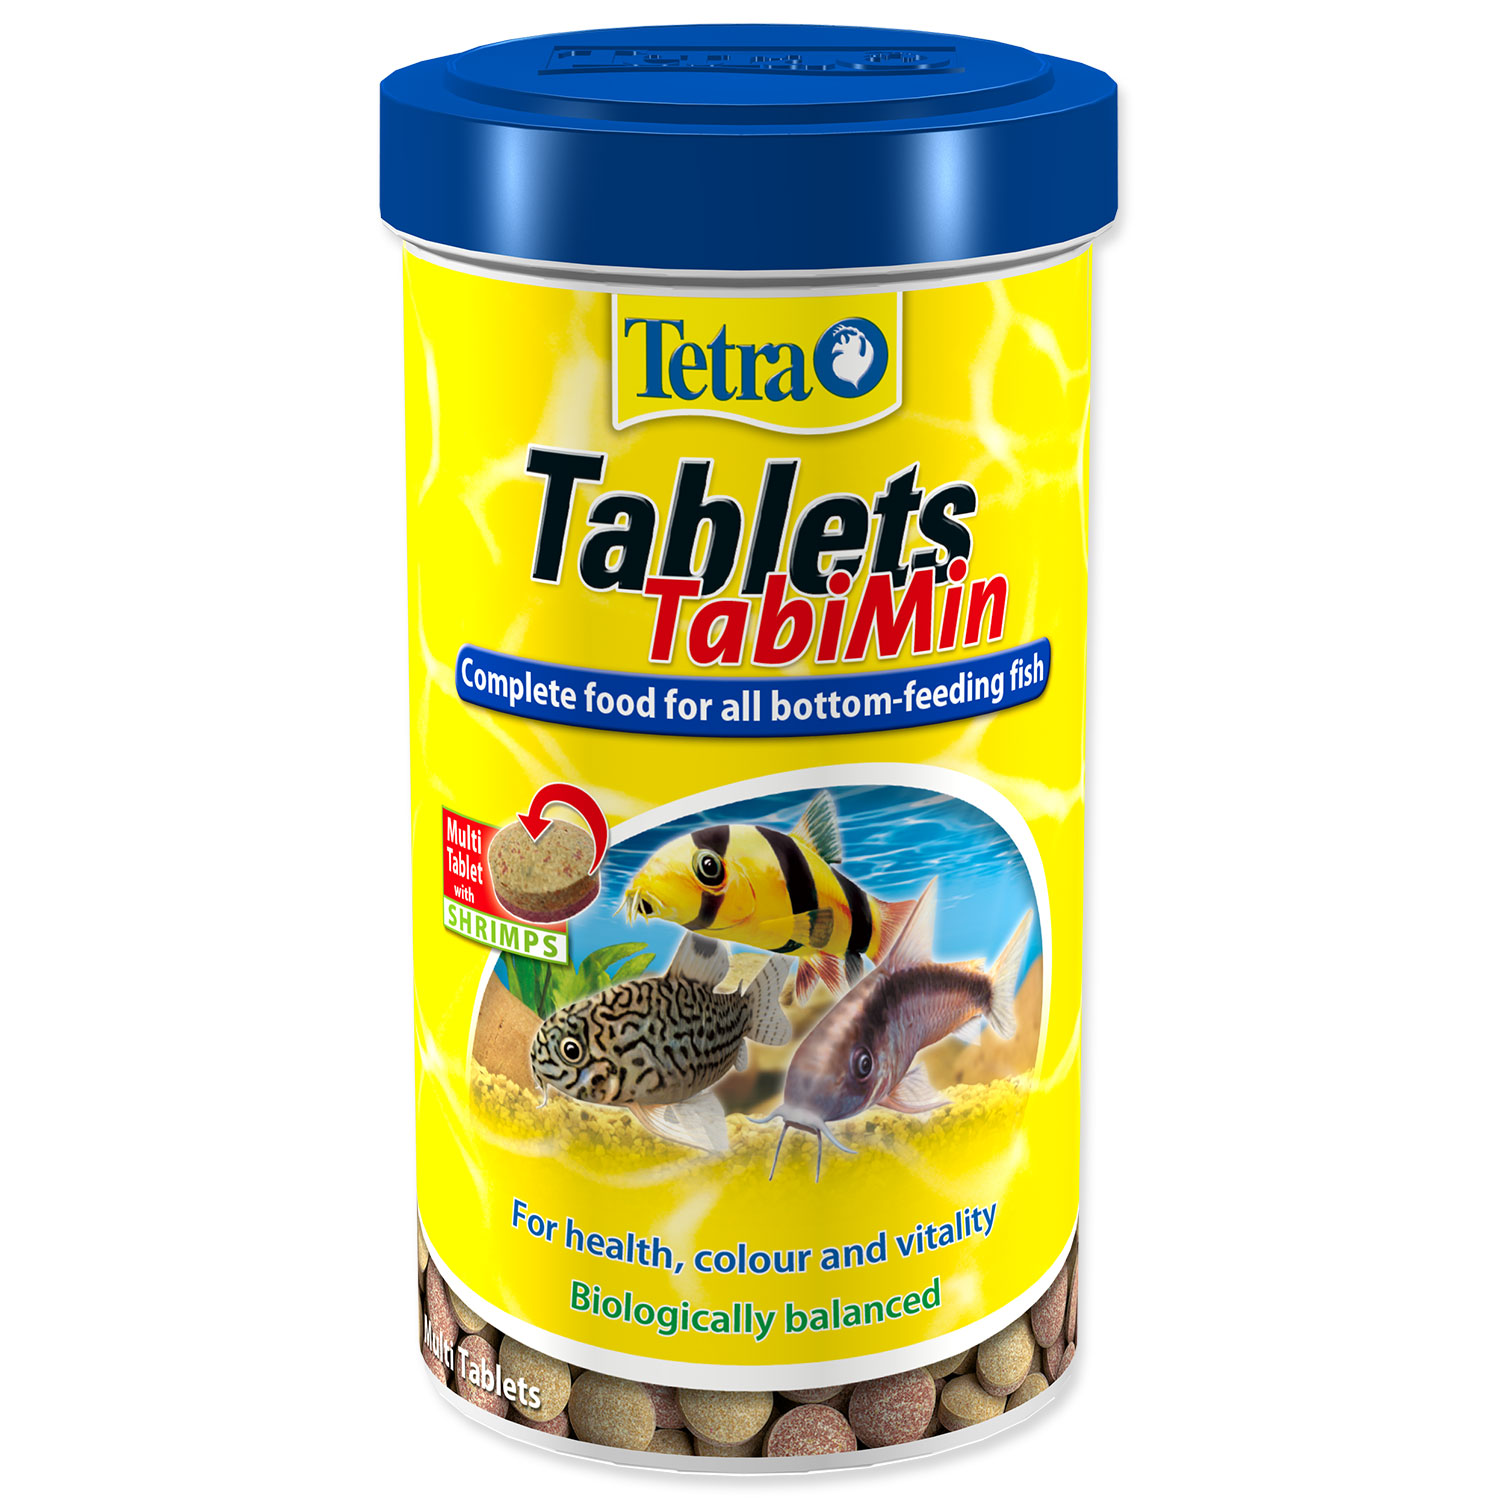 TETRA Tablets TabiMin